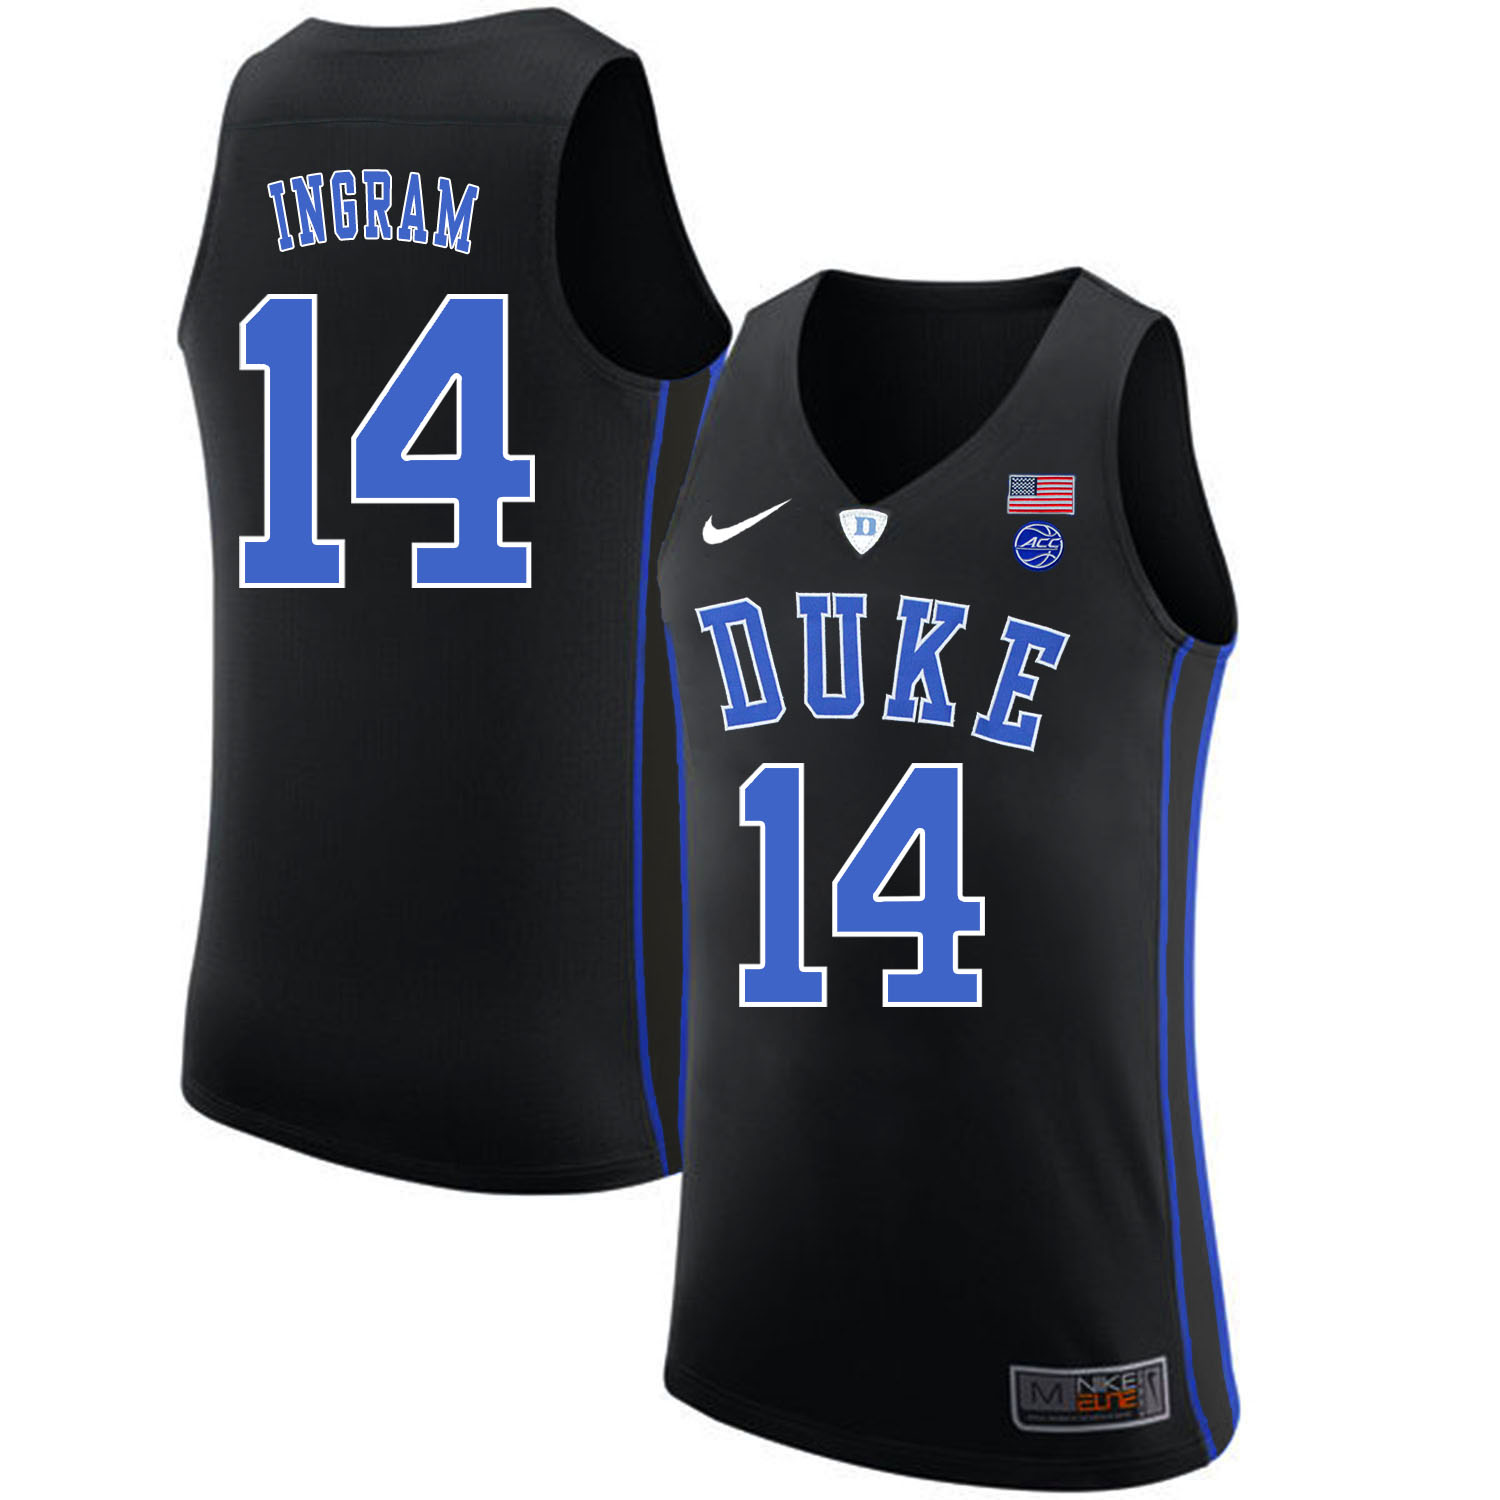 Duke Blue Devils 14 Brandon Ingram Black Nike College Basketball Jersey